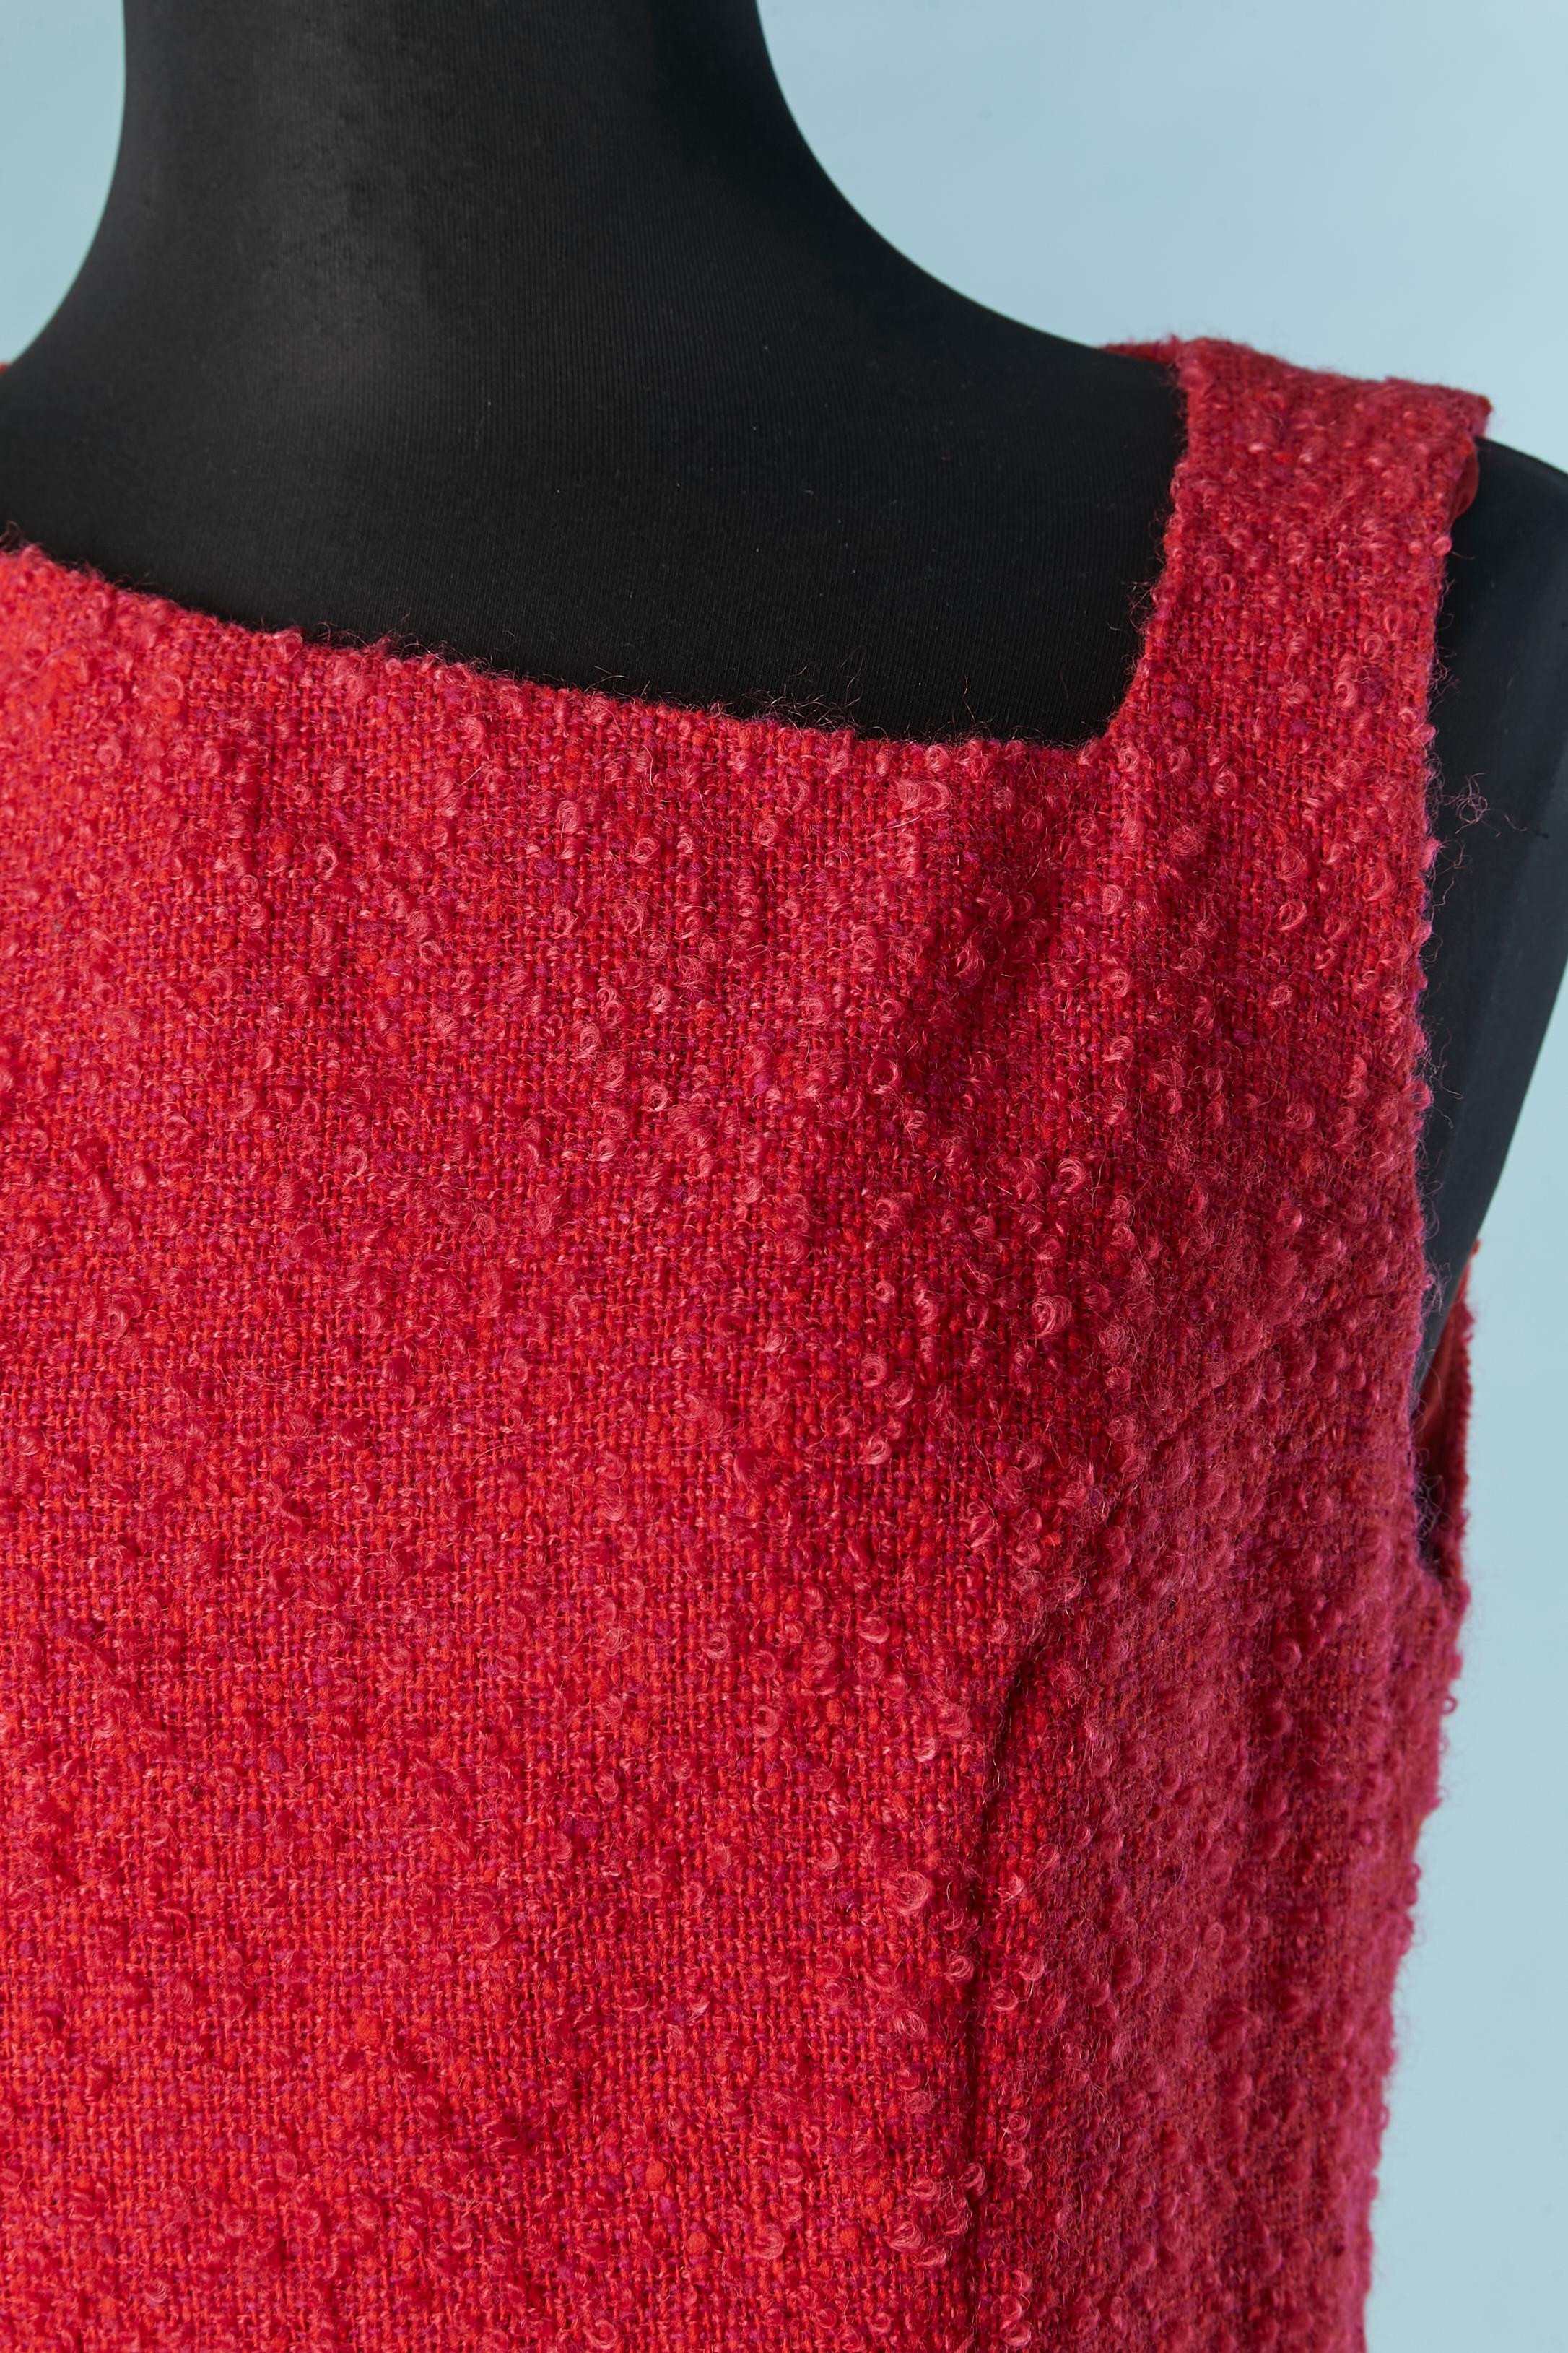 Robe sans manches en tweed rouge à bouclette. 
tissu principal : 77% laine, 23% mohair. Doublure : rayonne
Fermeture éclair au milieu du dos. Travail à la découpe . 
Hologramme d'authenticité. 
TAILLE 48 (It) 44 (Fr) 12 (Us) L 